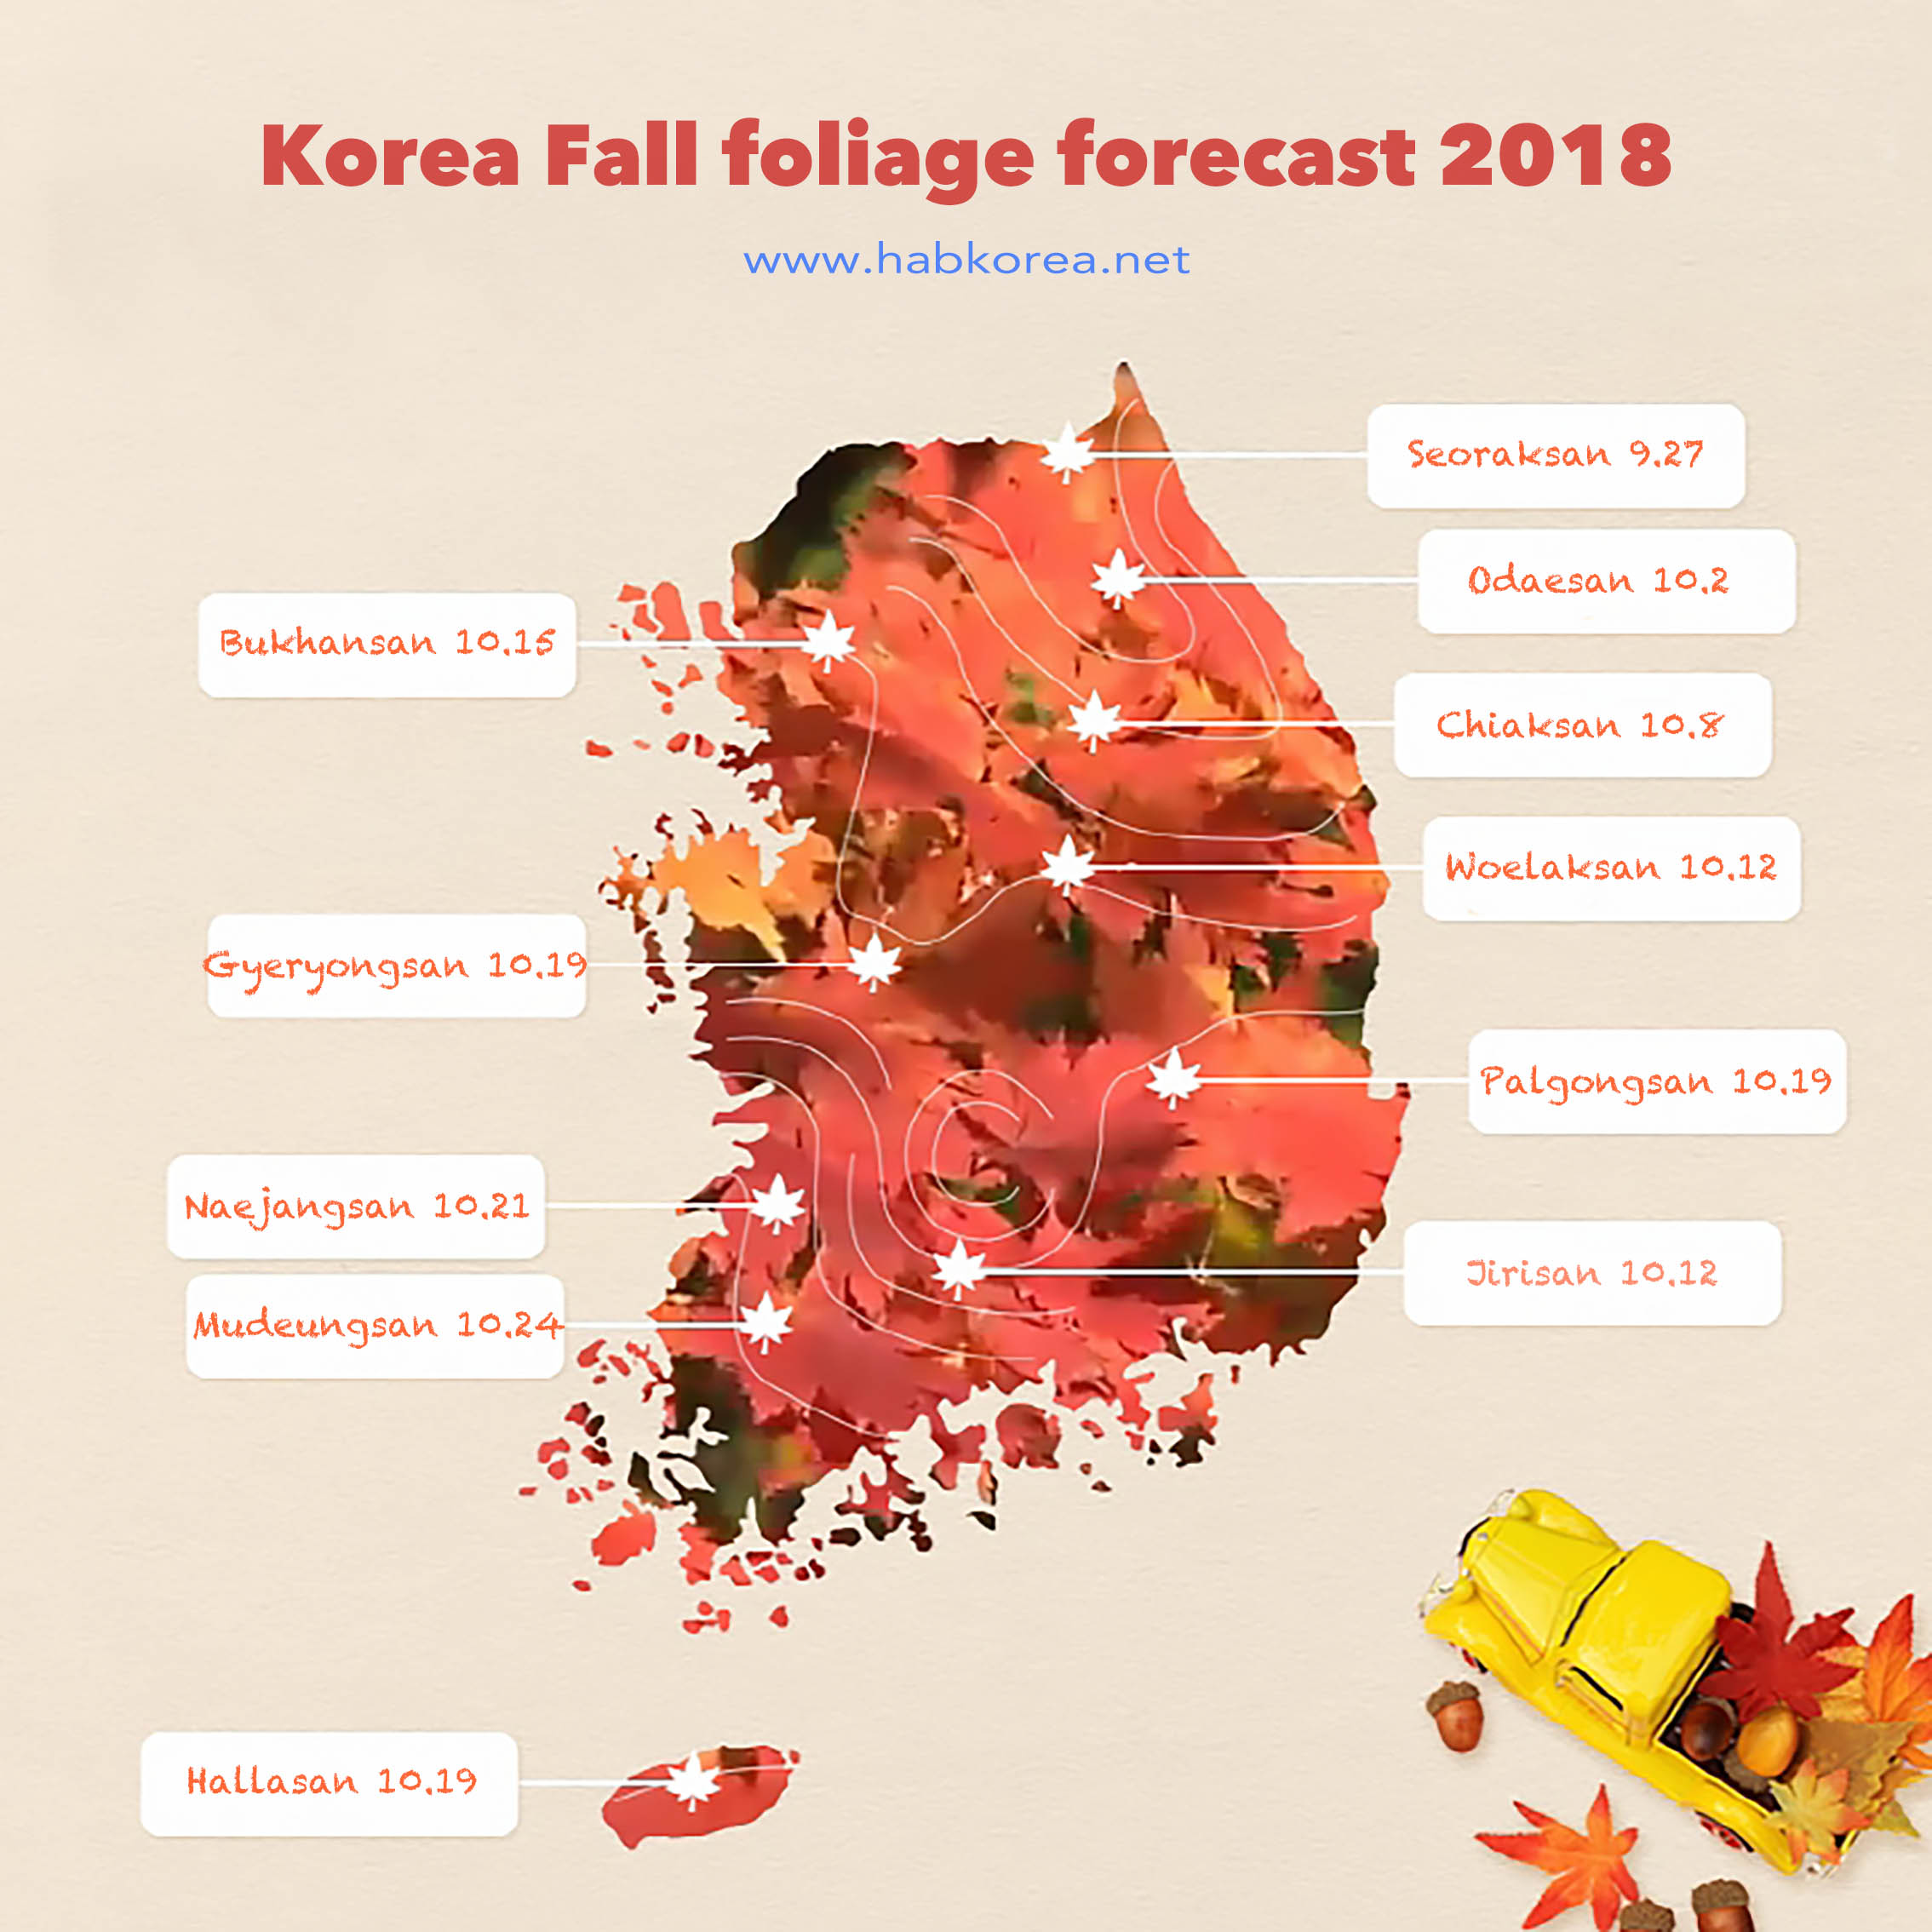 2018 Korea Autumn foliage forecast guide